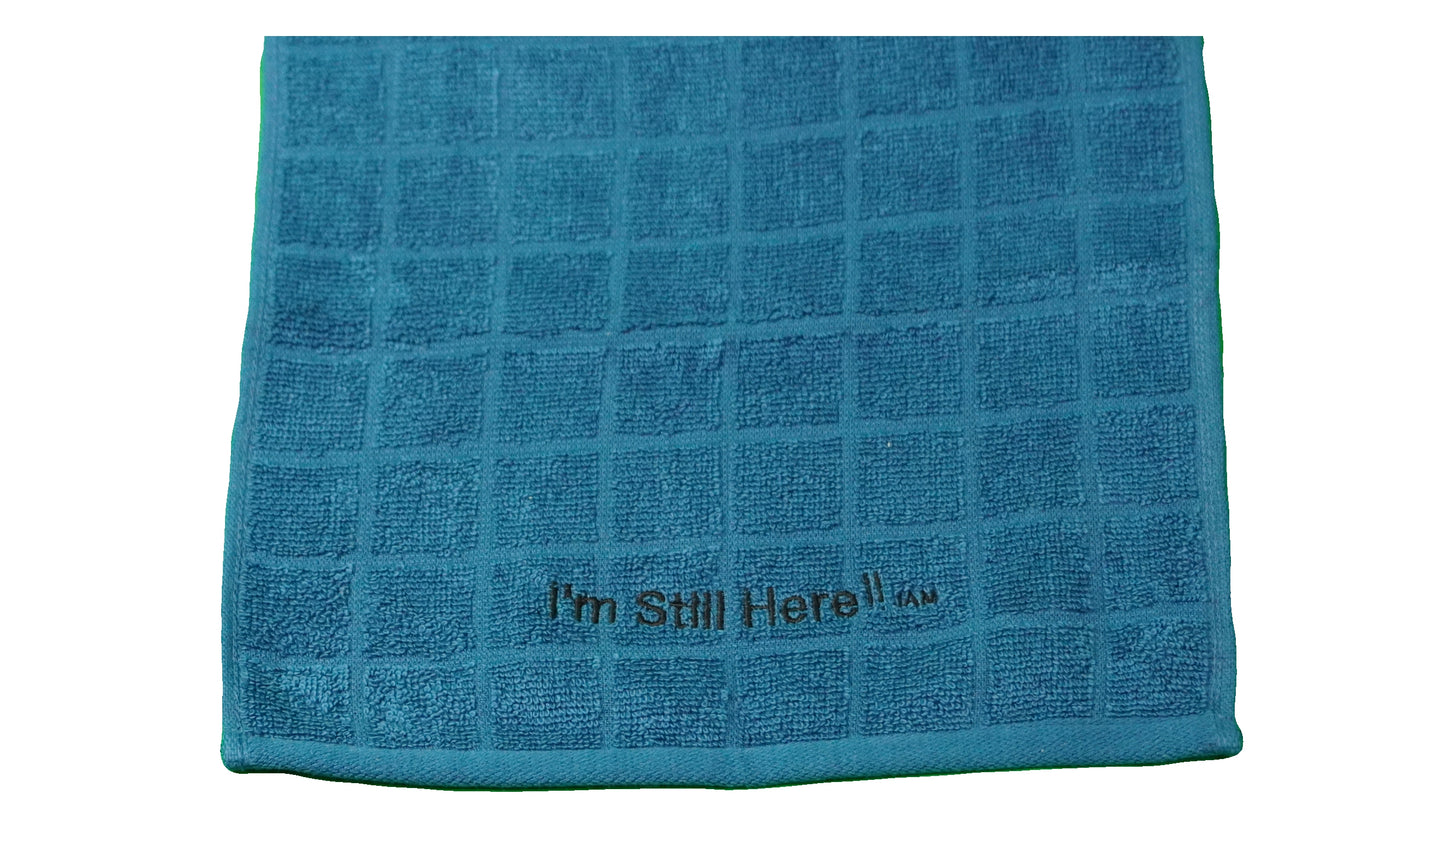 Sweat Towels ~ "I'm Still Here ! "